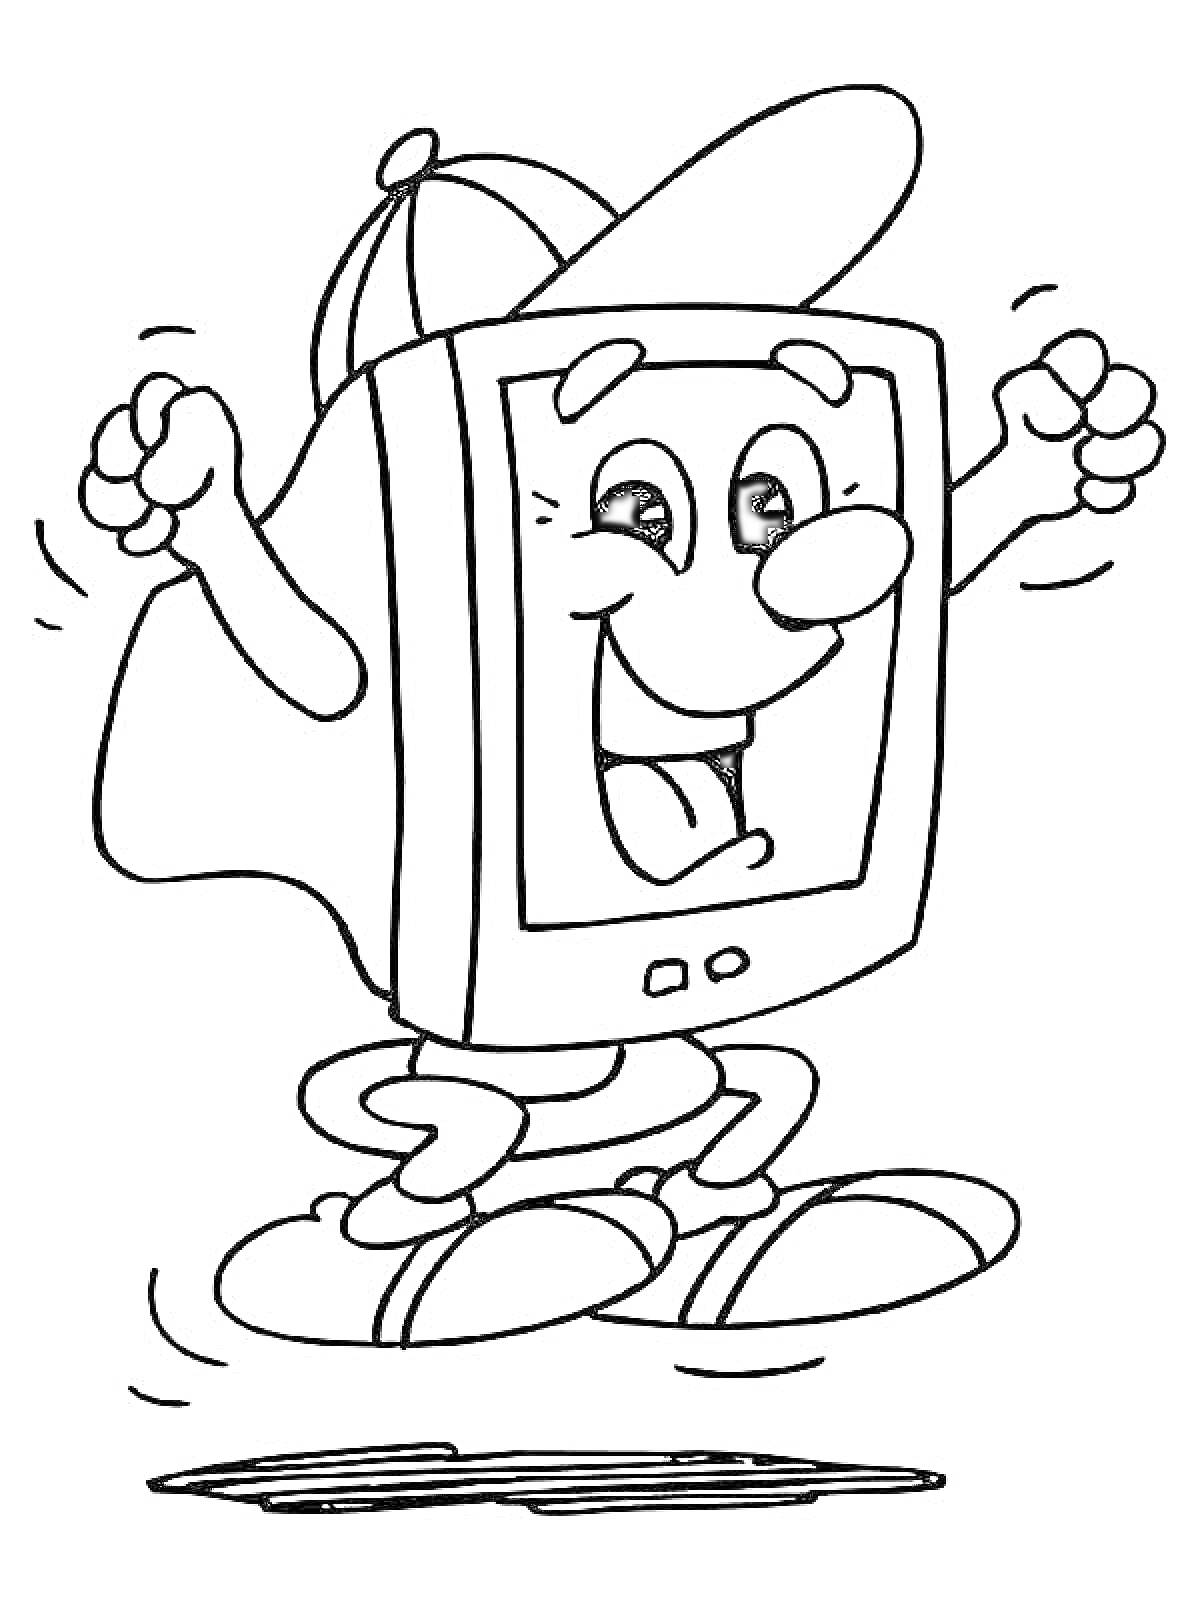 Раскраска Компьютер в виде мультяшного персонажа с руками и ногами в кепке